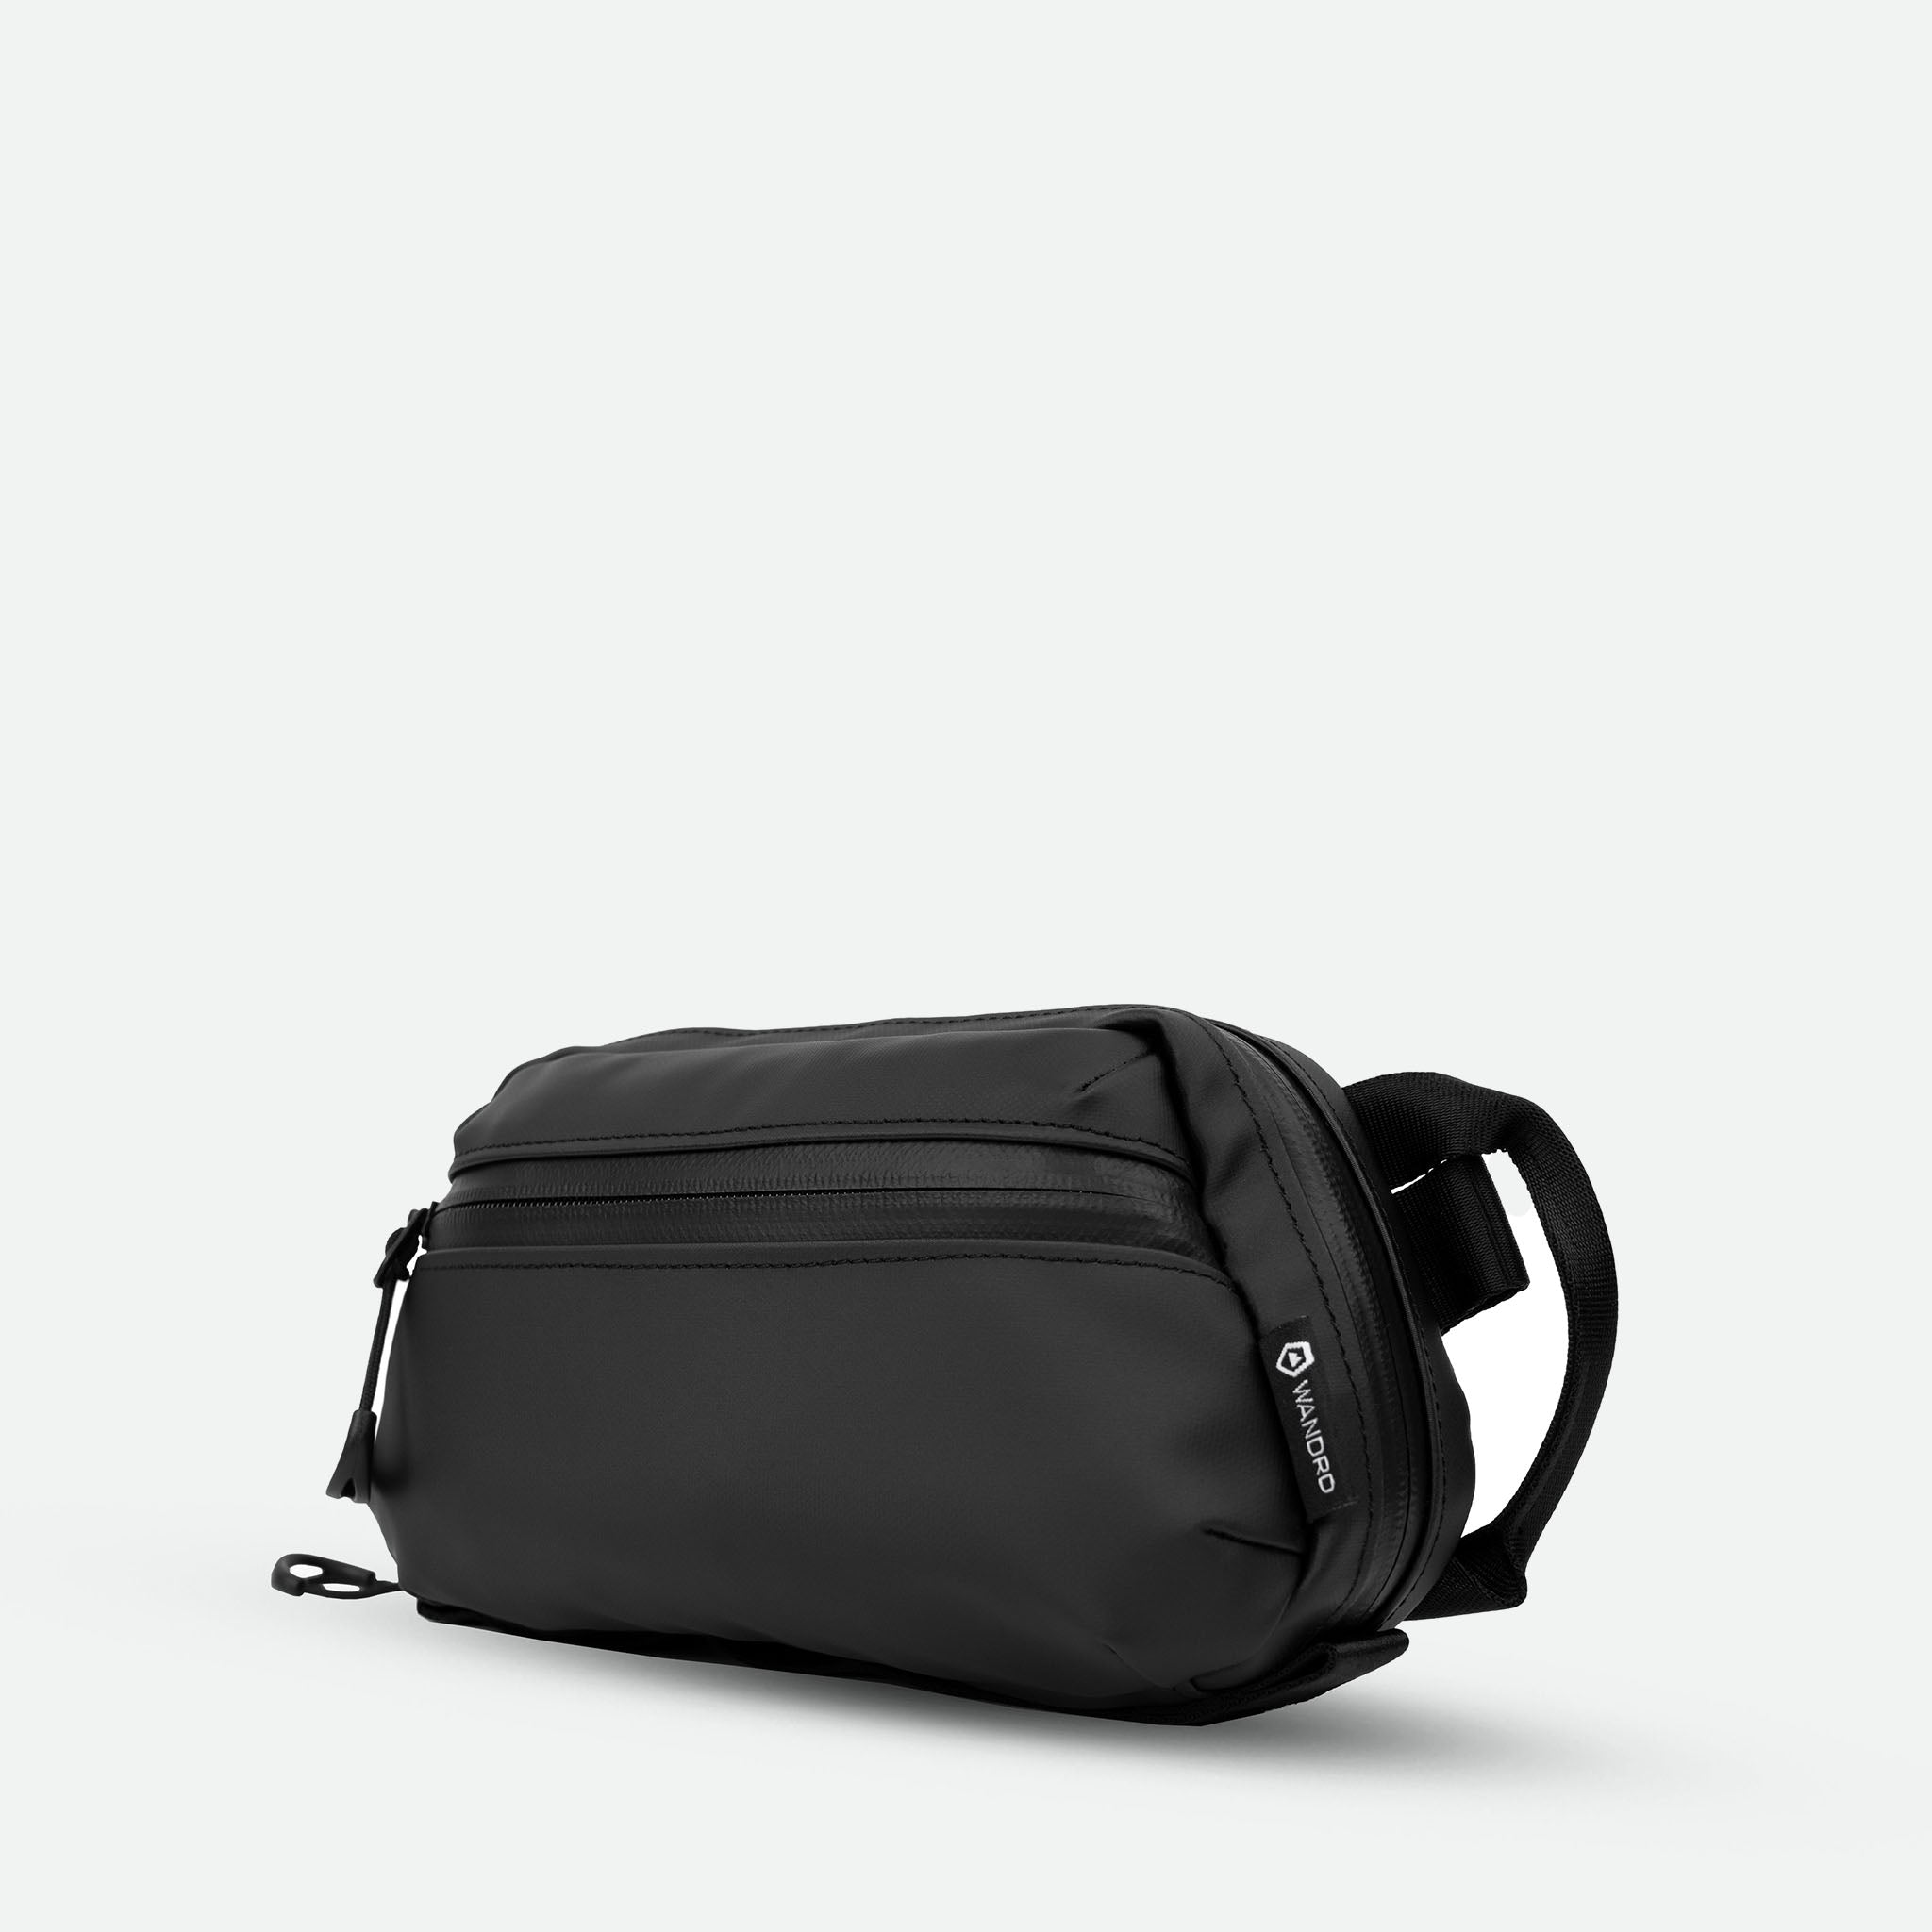 Wandrd Tech Bag Medium